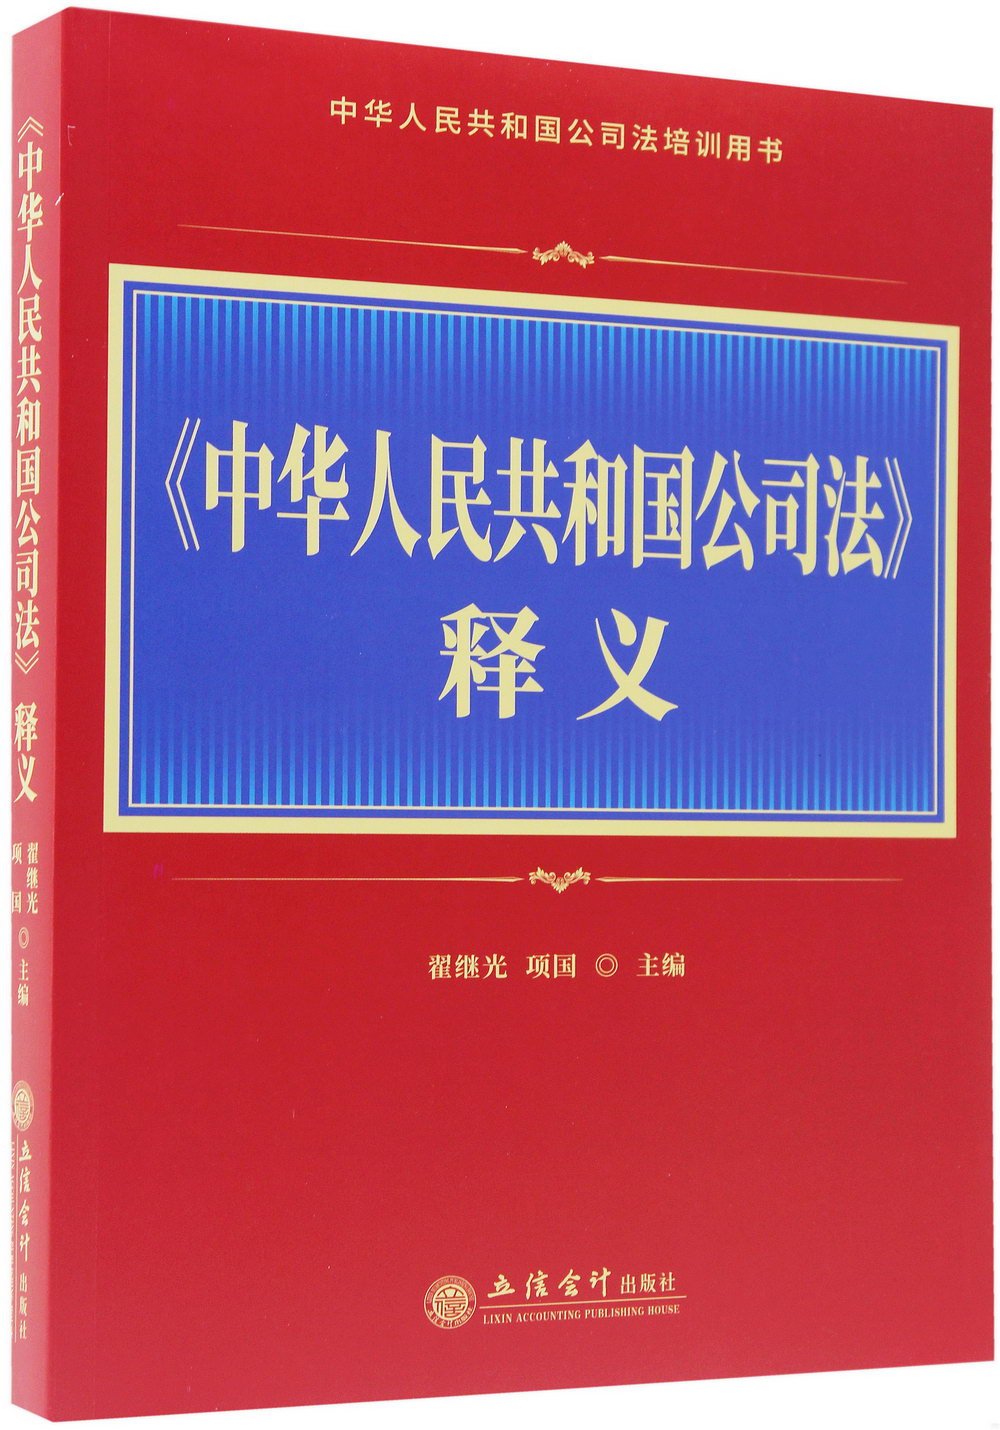 《中華人民共和國公司法》釋義